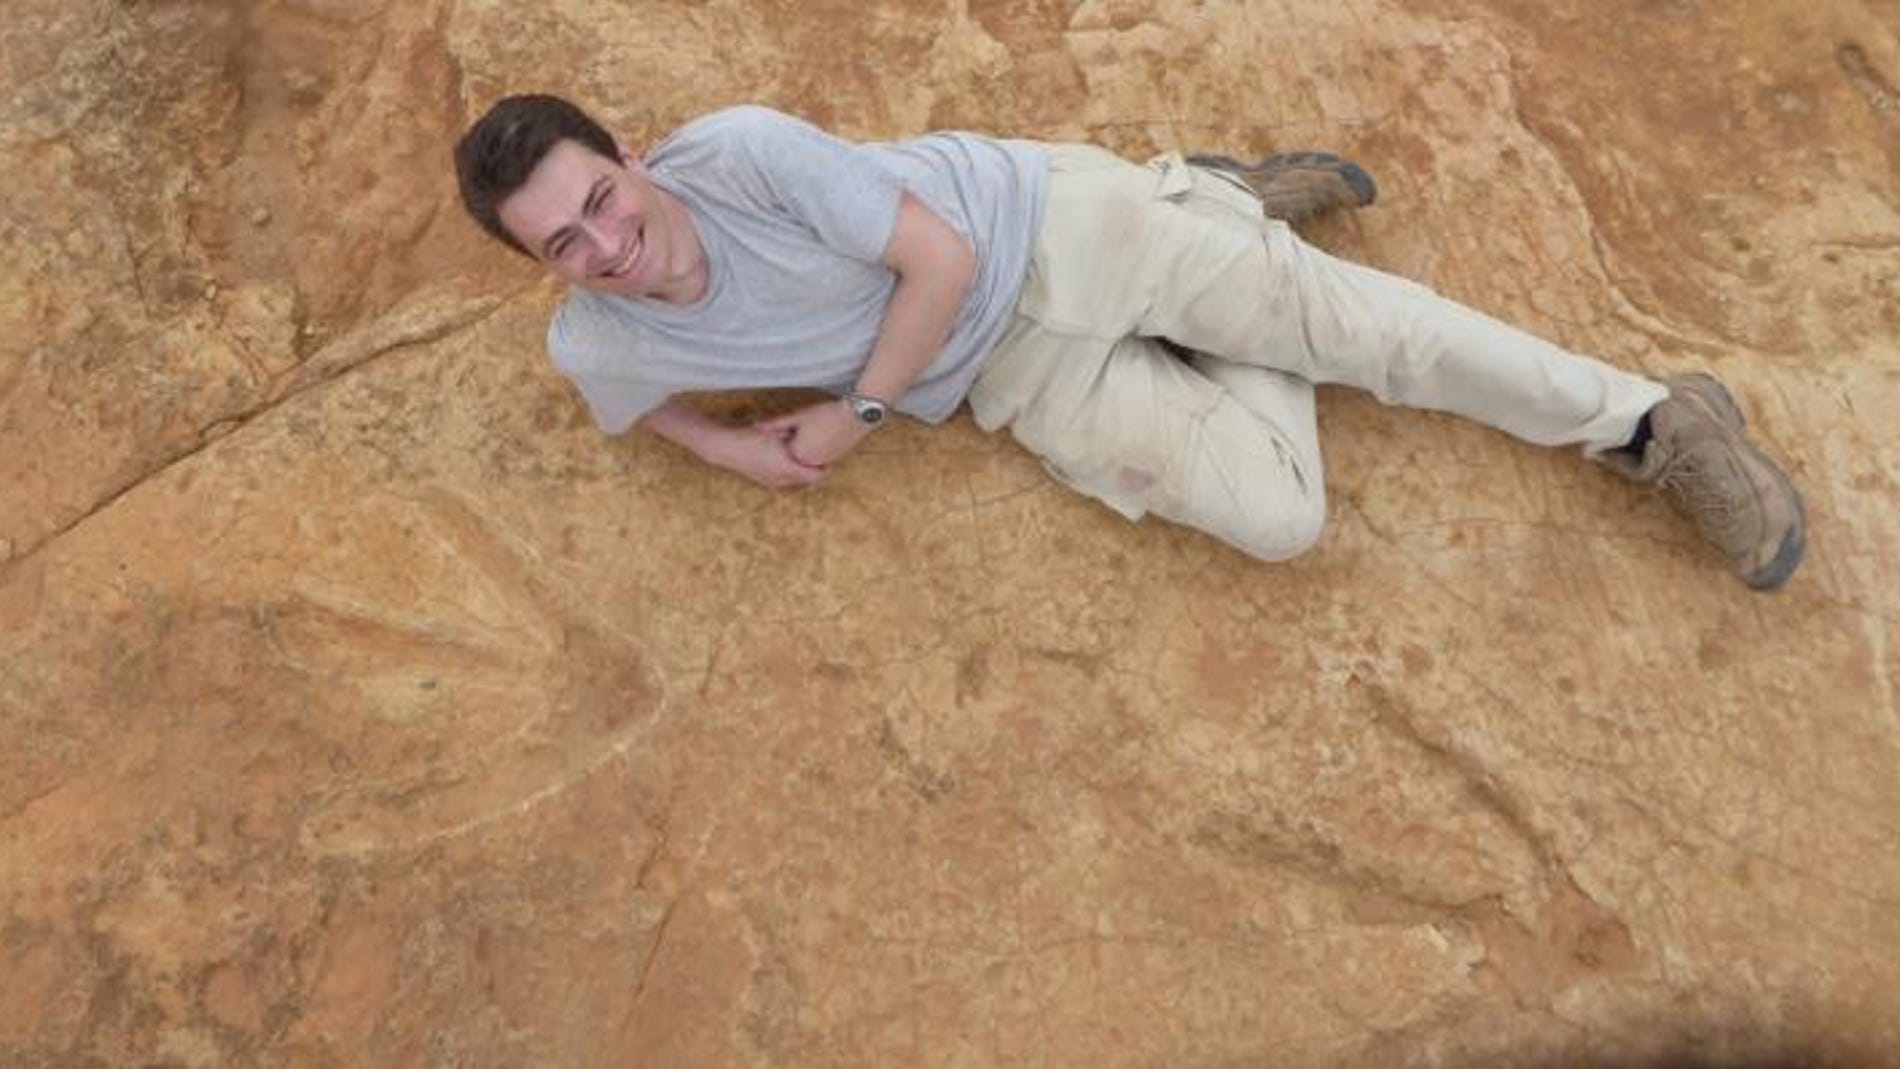 Un megadinosaurio carnivoro deambulo por el sur de Africa hace 200 millones de anos